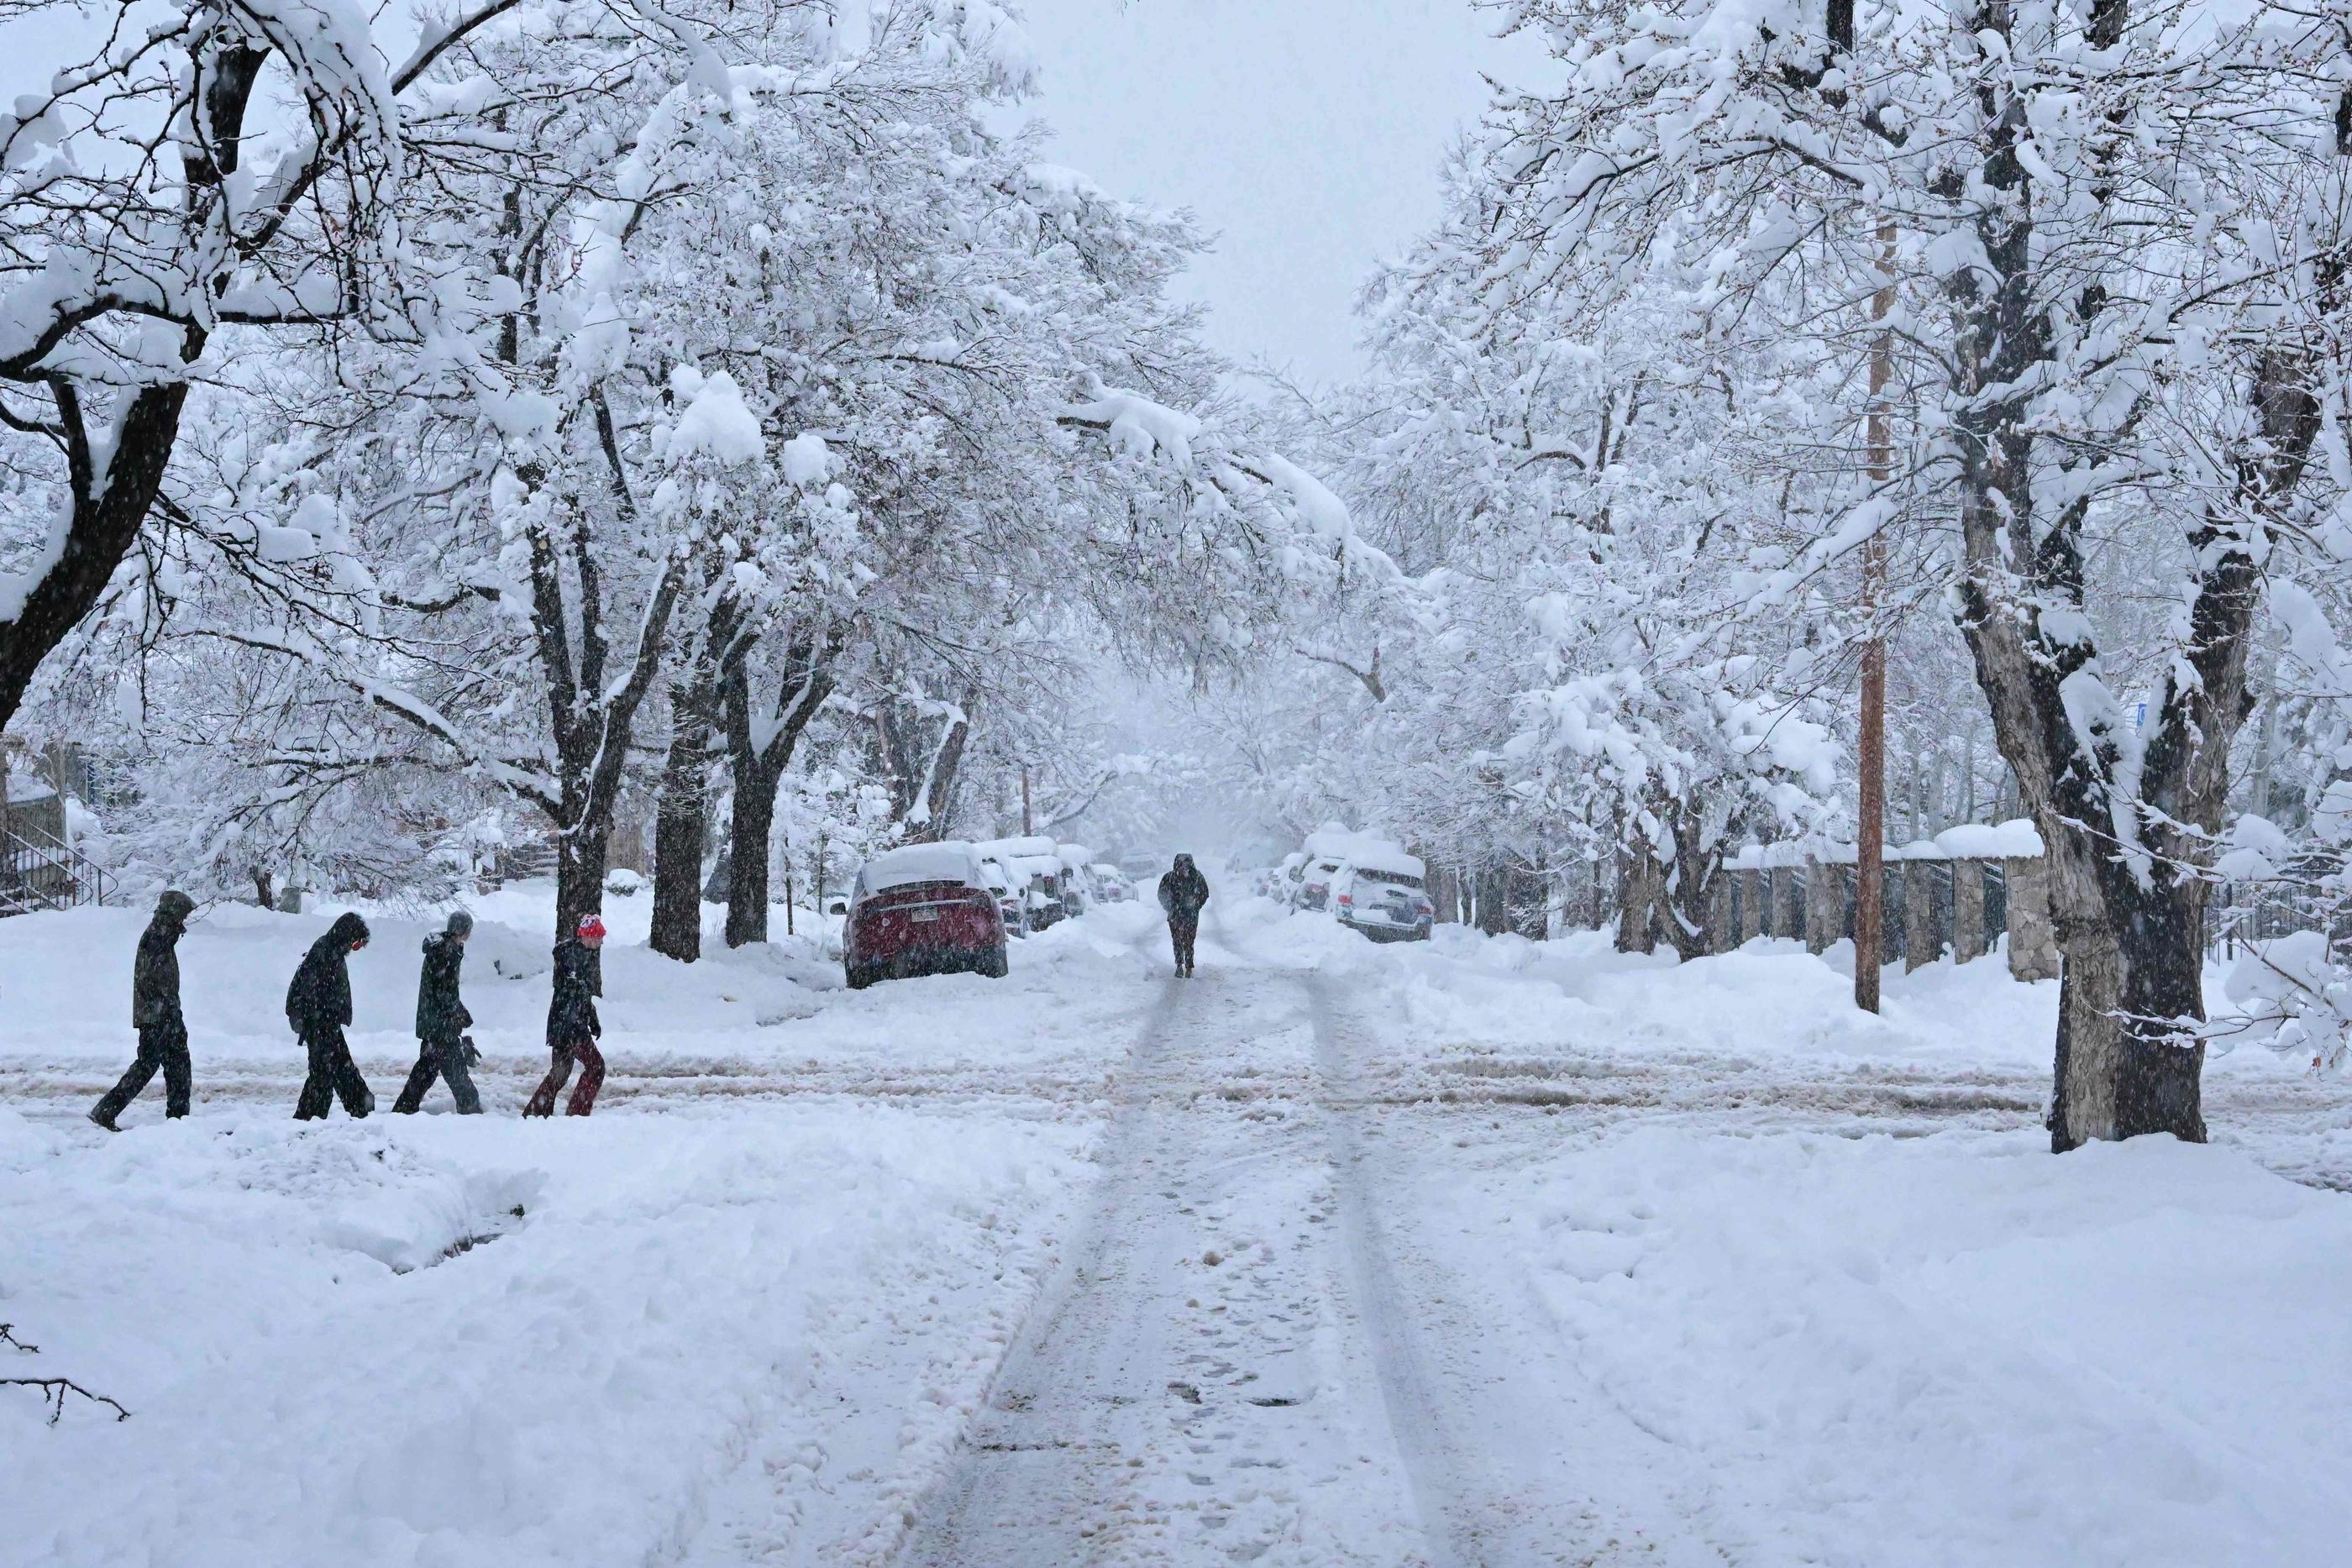 Boulder (Colorado, États-Unis), jeudi. Des personnes marchent dans la rue pendant une tempête de neige. AFP/Getty images/Mark Makela